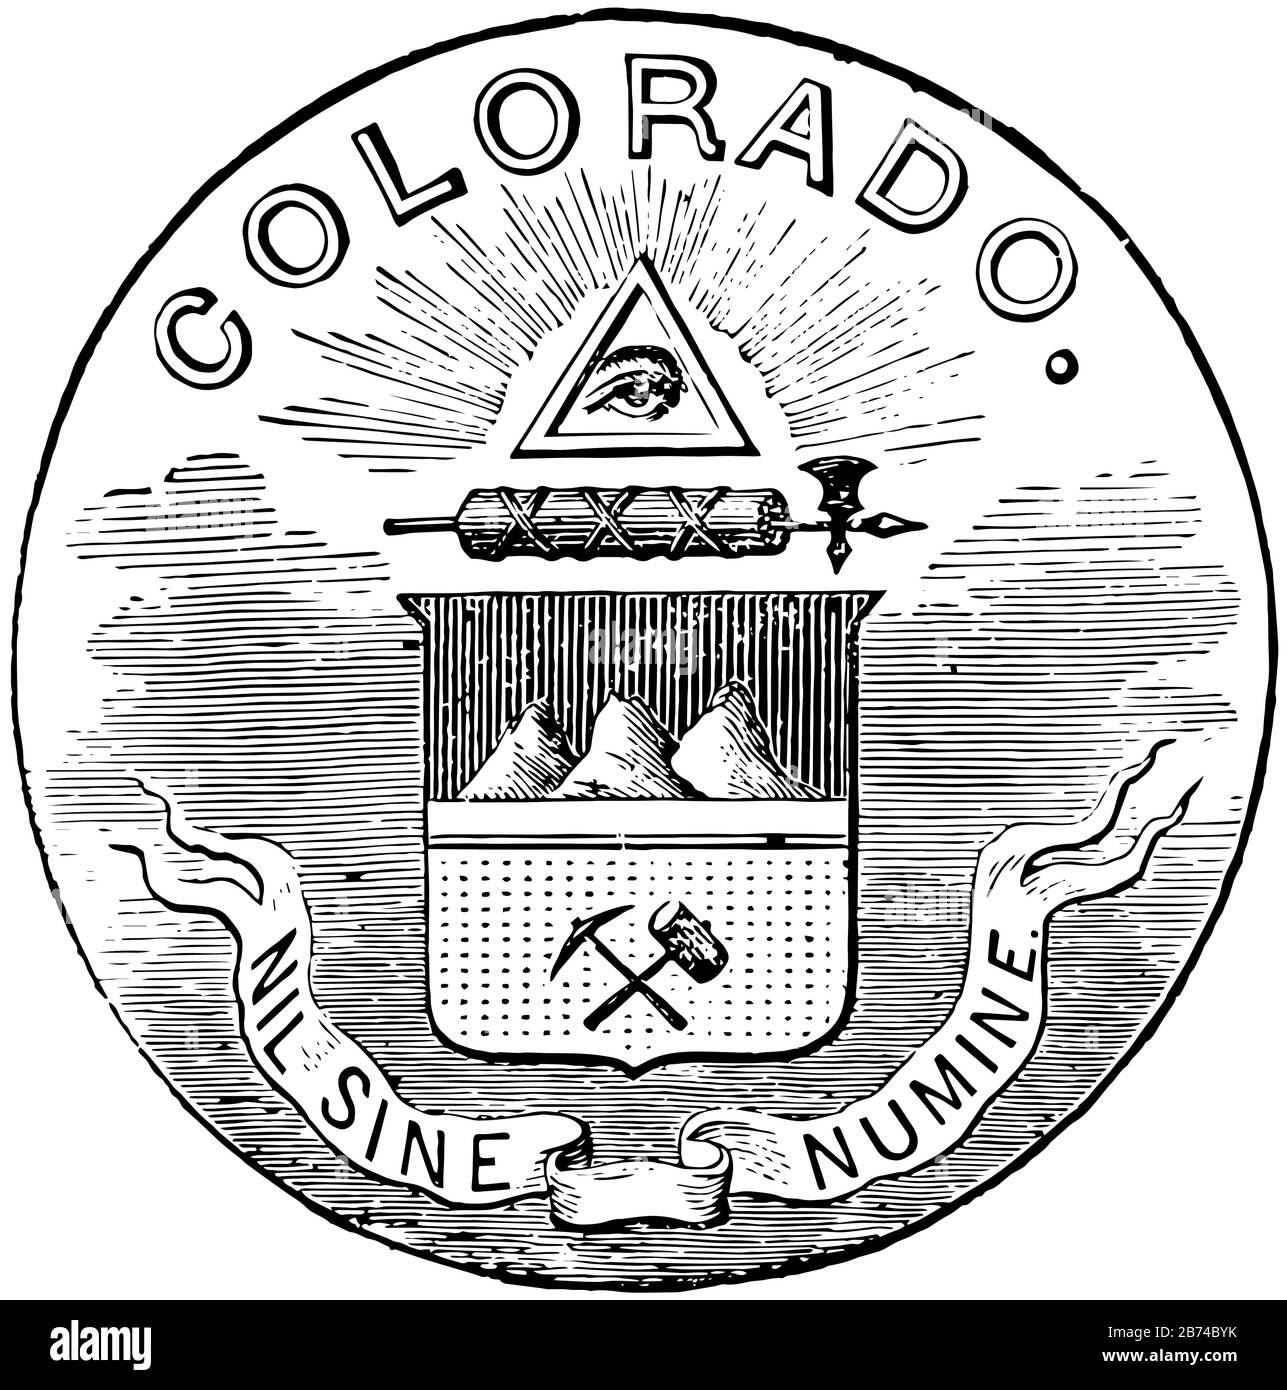 Il sigillo ufficiale dello stato statunitense del Colorado nel 1889, questo sigillo ha l'occhio della provvidenza in cima al triangolo, sotto quella asta con un'ascia da battaglia Illustrazione Vettoriale